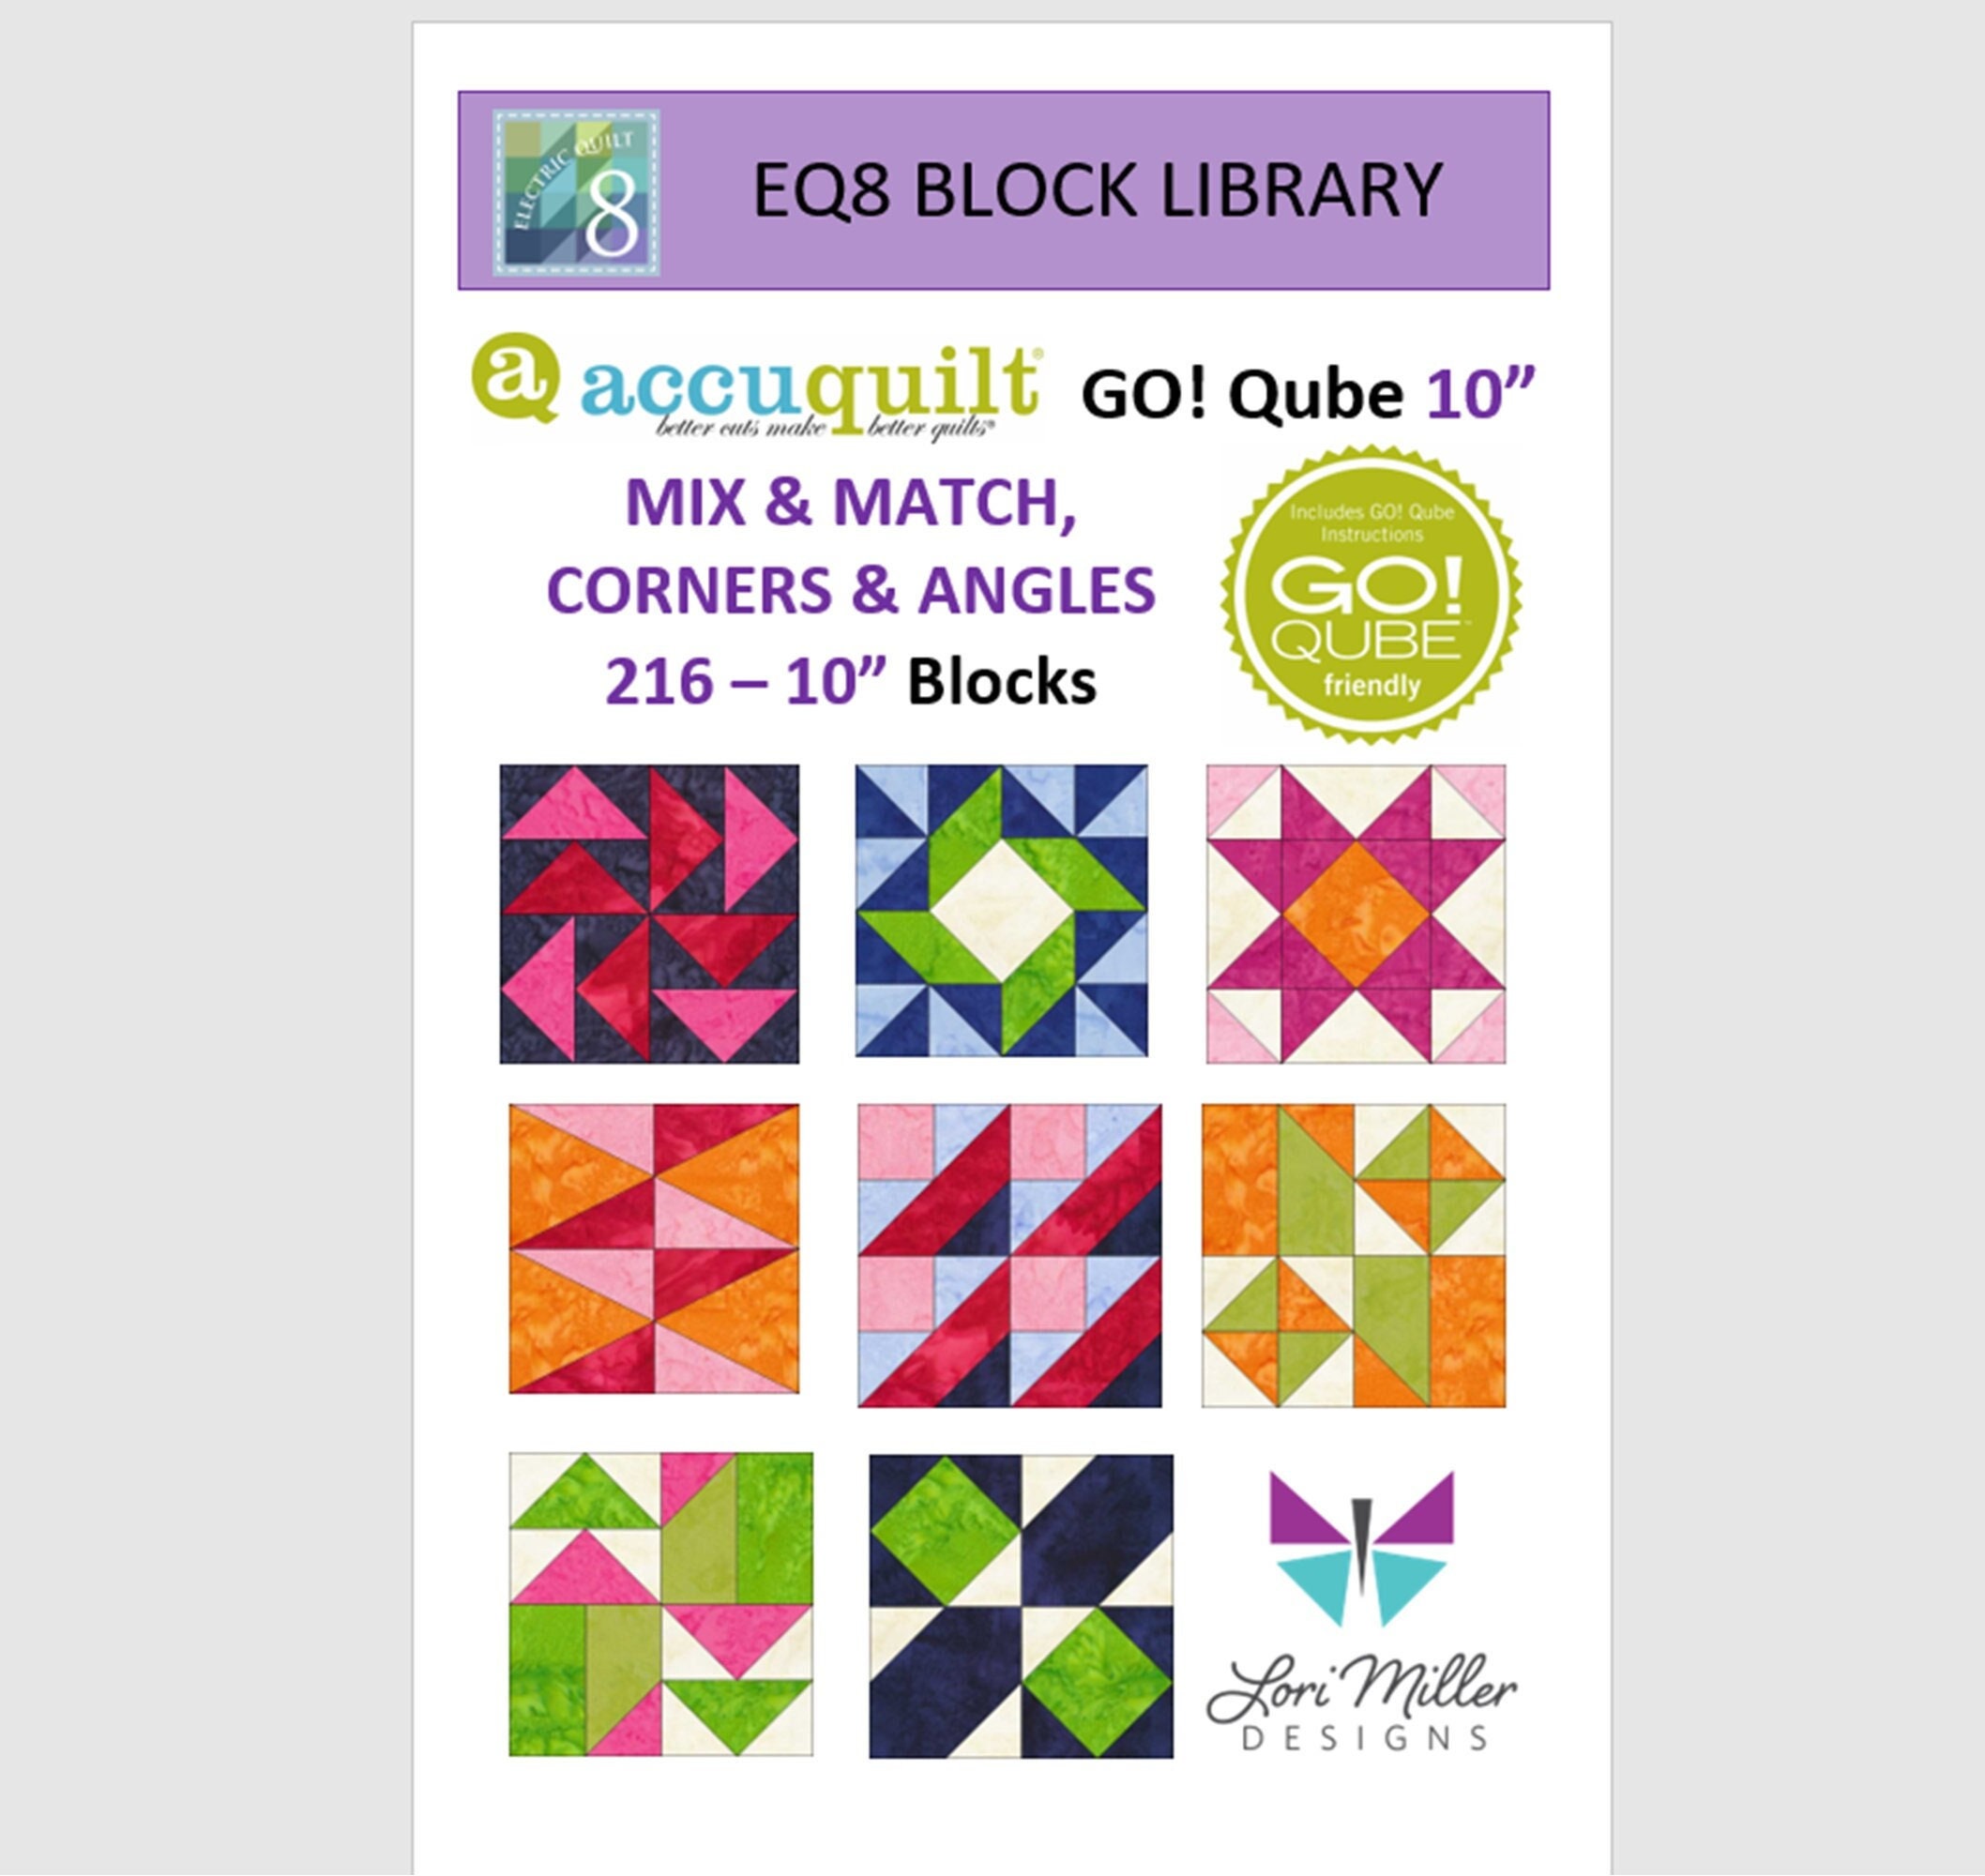 AccuQuilt Go! Qube Mix & Match 10 Block